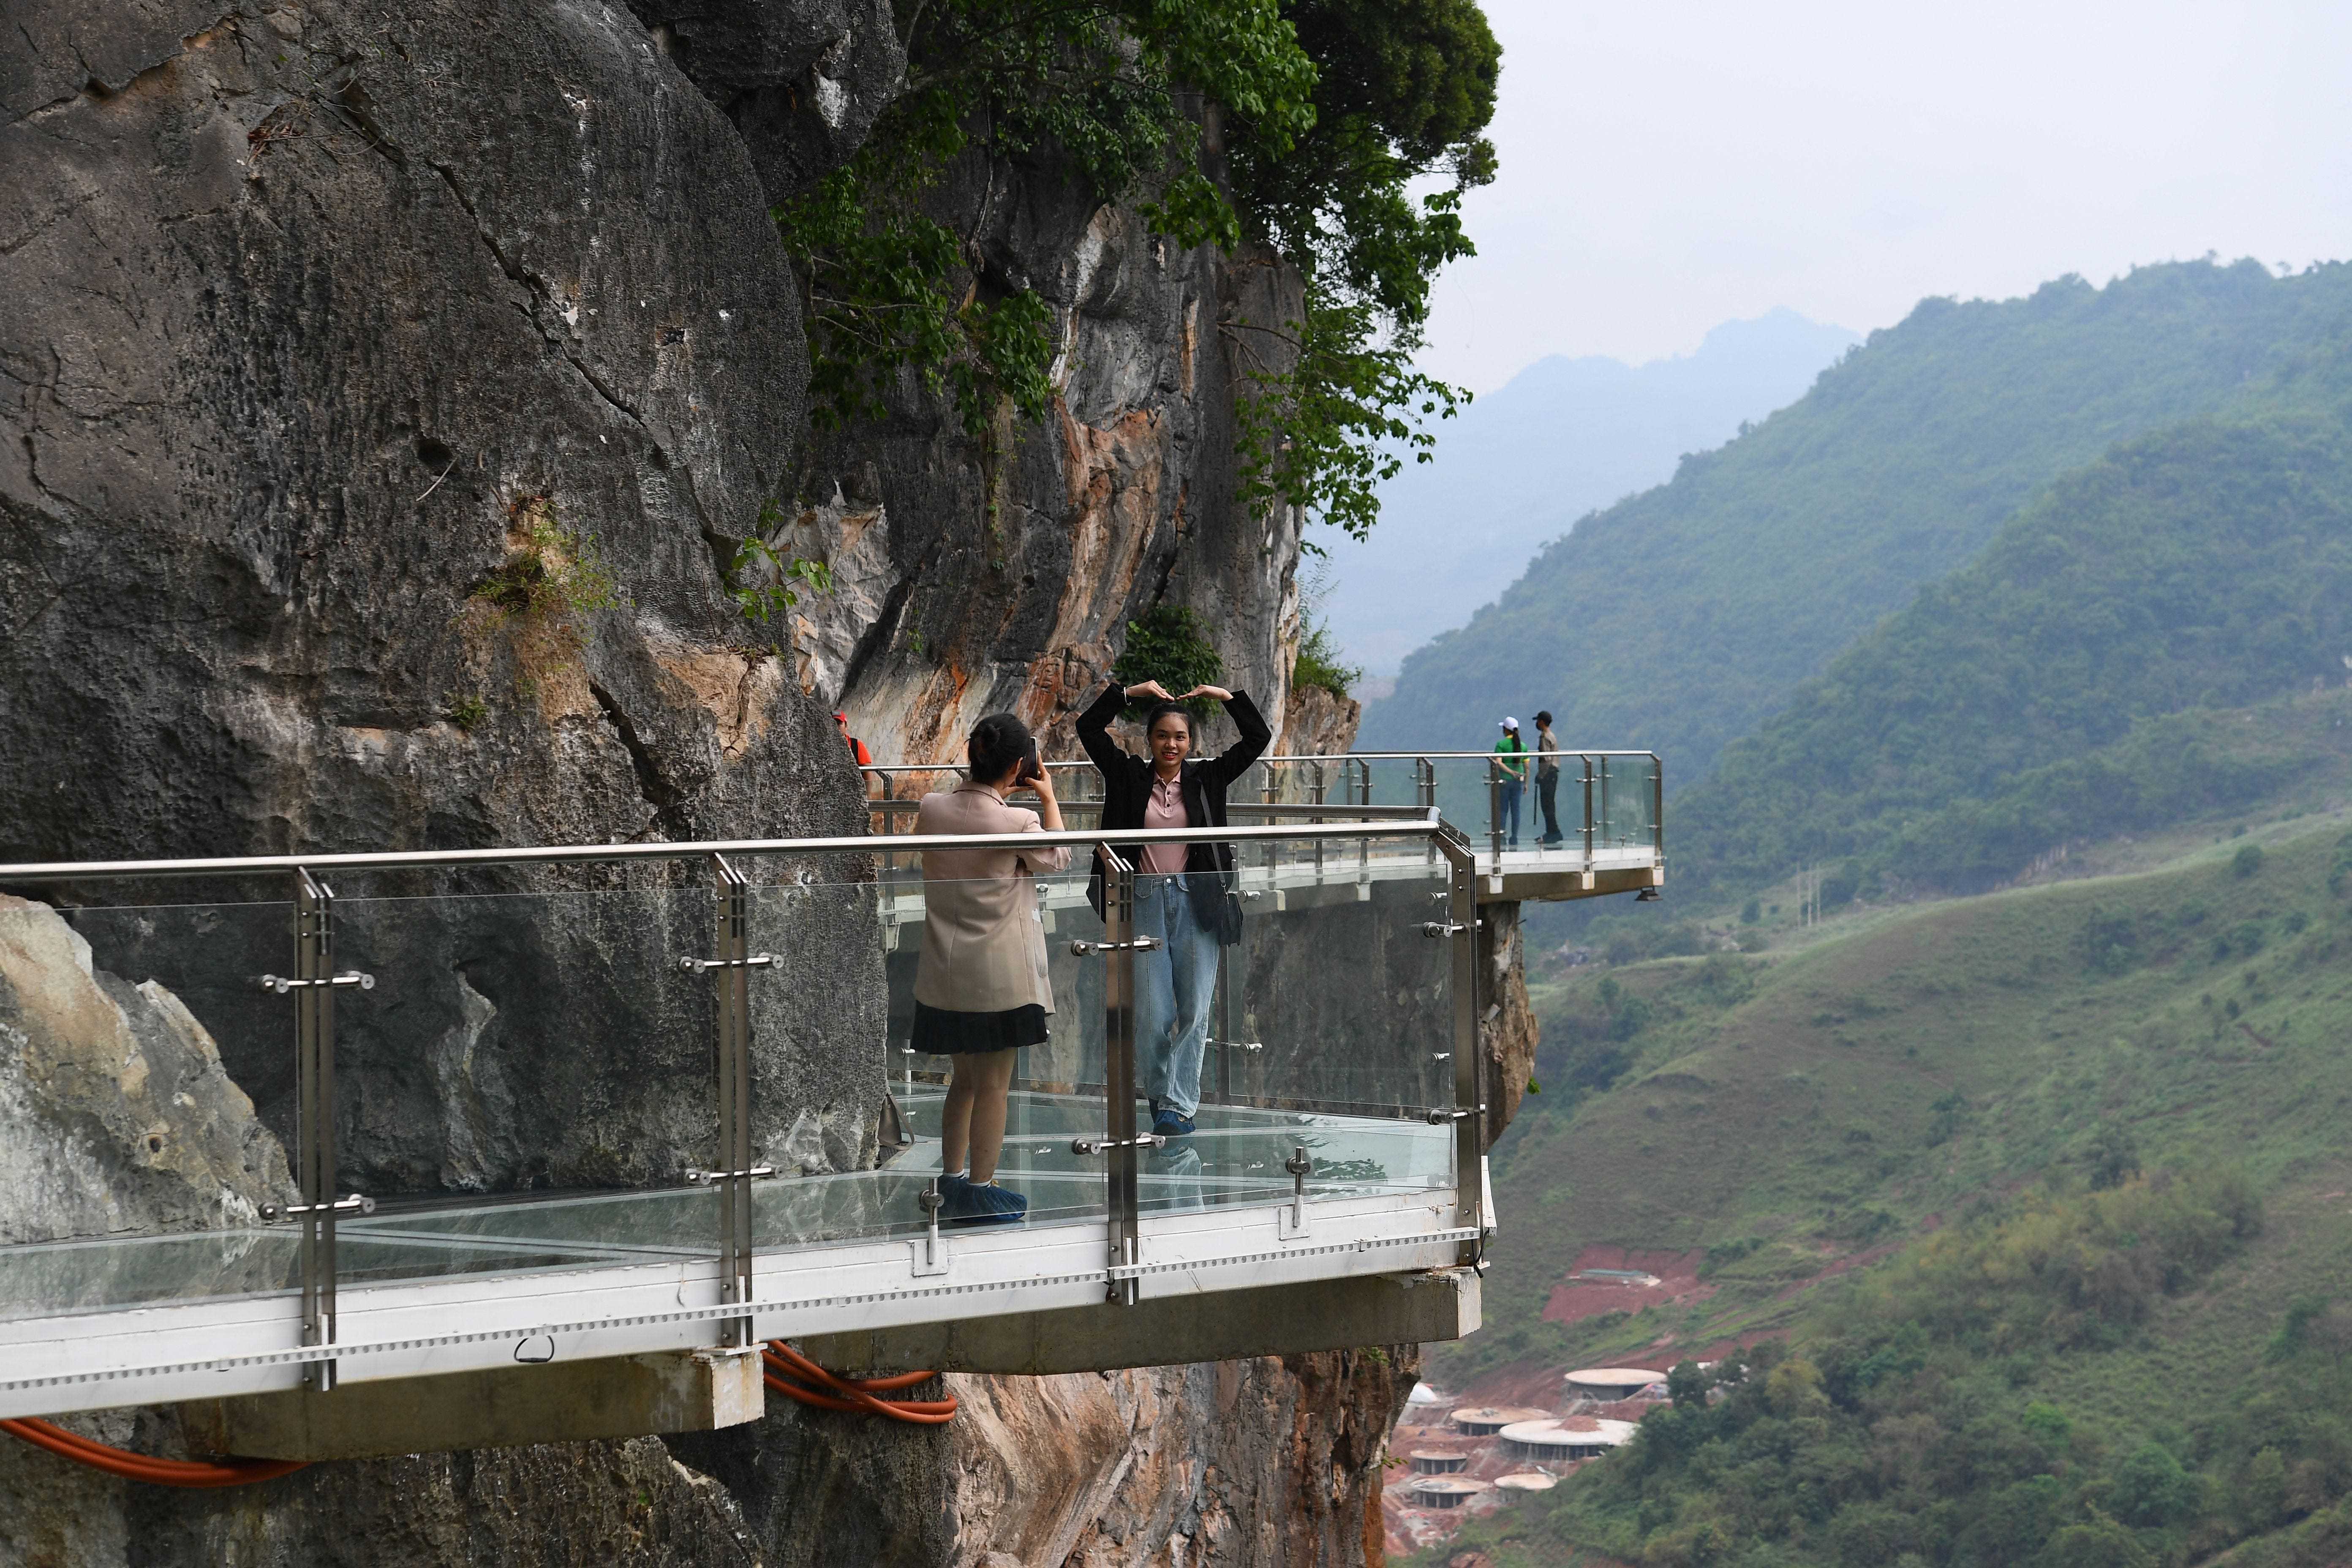 Menschen stehen auf der Glasbrücke Bach Long im Distrikt Moc Chau in der vietnamesischen Provinz Son La